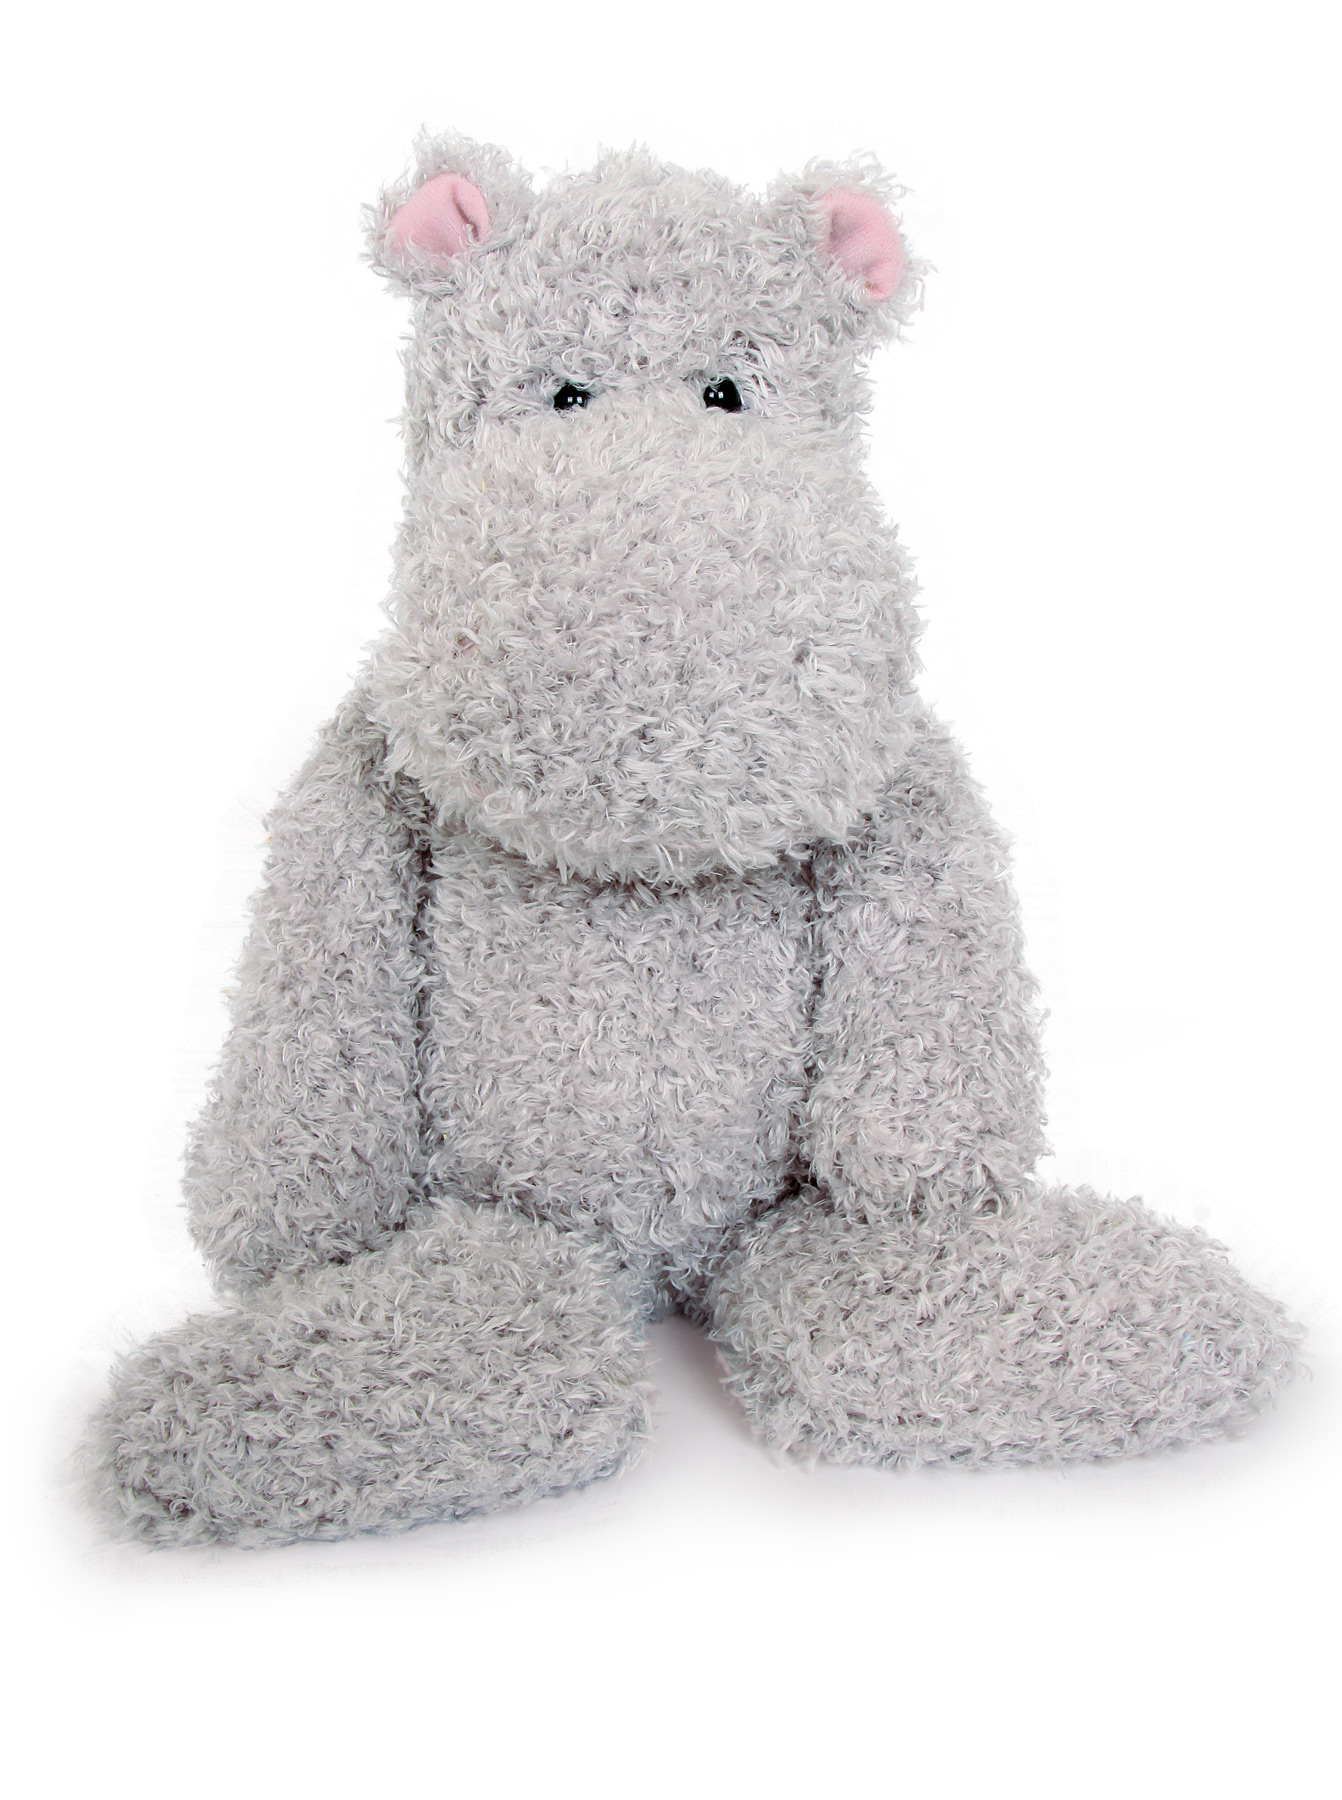 Hippo & Rabbit Cuddly Toy